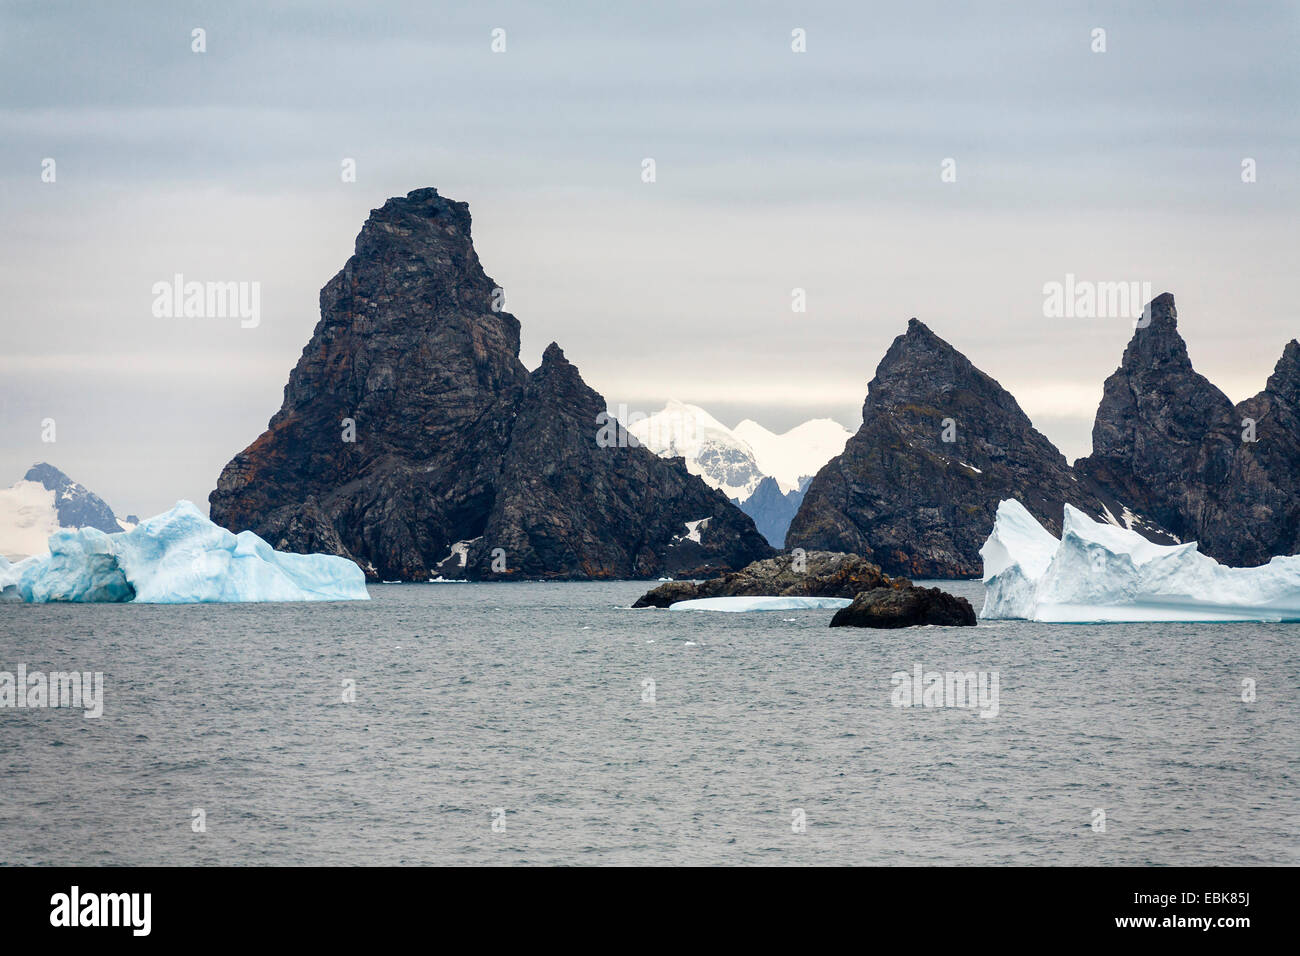 Laurie Isola, parte di alle Orcadi del Sud, al Washington stretto nel sud polare, Oceano Antartico, a sud delle Isole Orkney, Washington stretto, Isola di Laurie Foto Stock